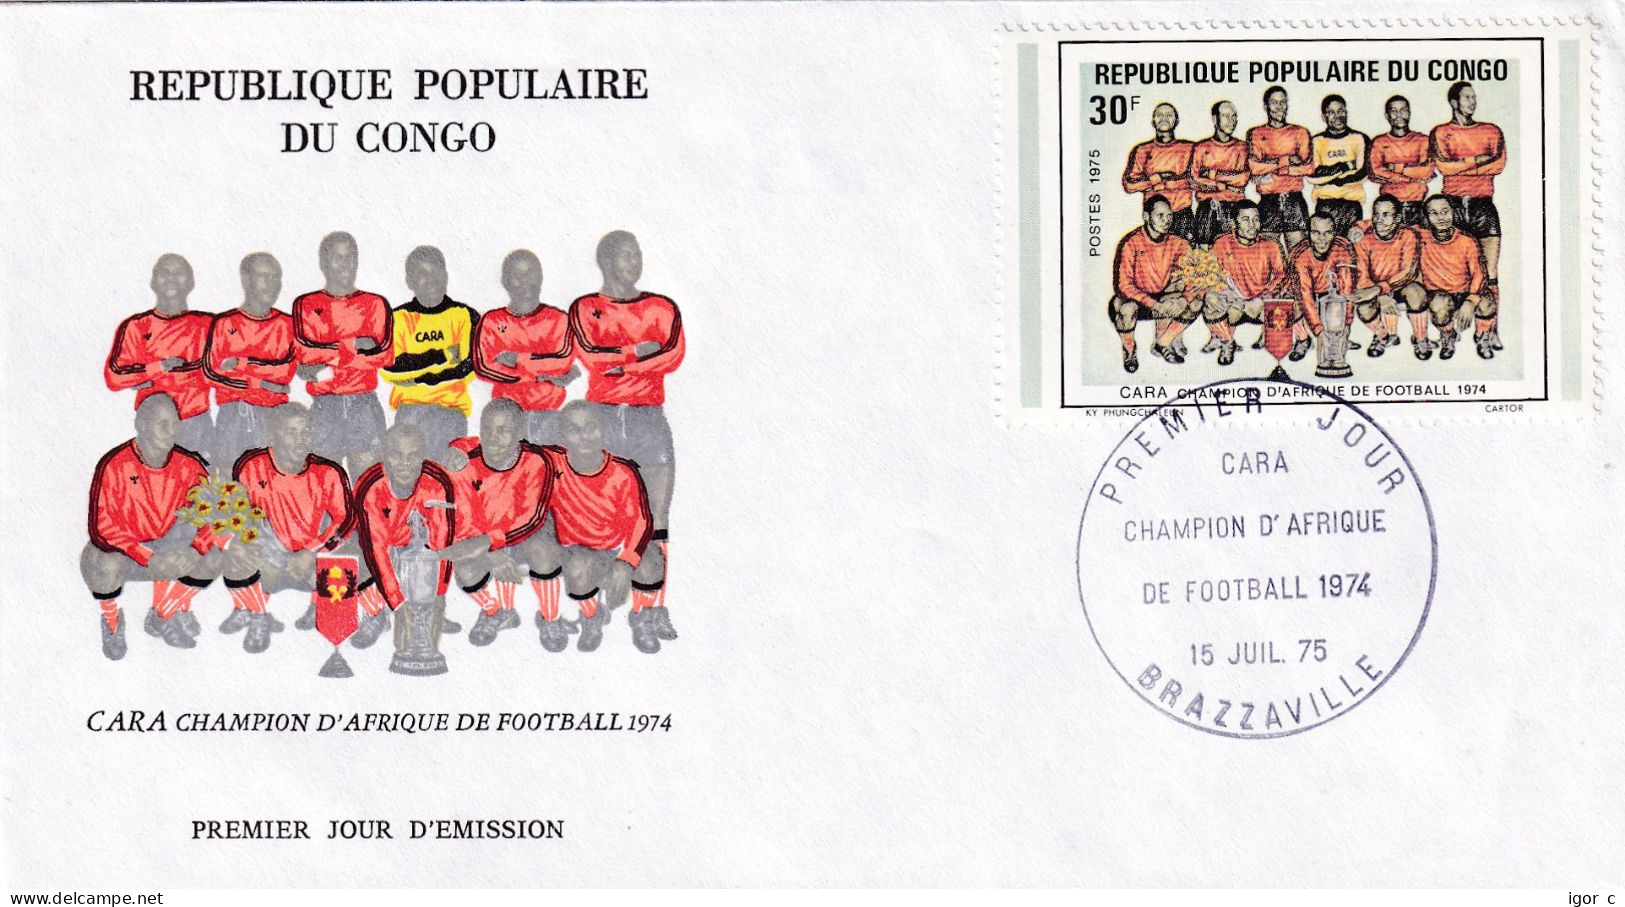 Congo Republ 1974 Cover: Football Soccer Fussball Calcio; African Cup; Congo Champion Team Photo - Afrika Cup